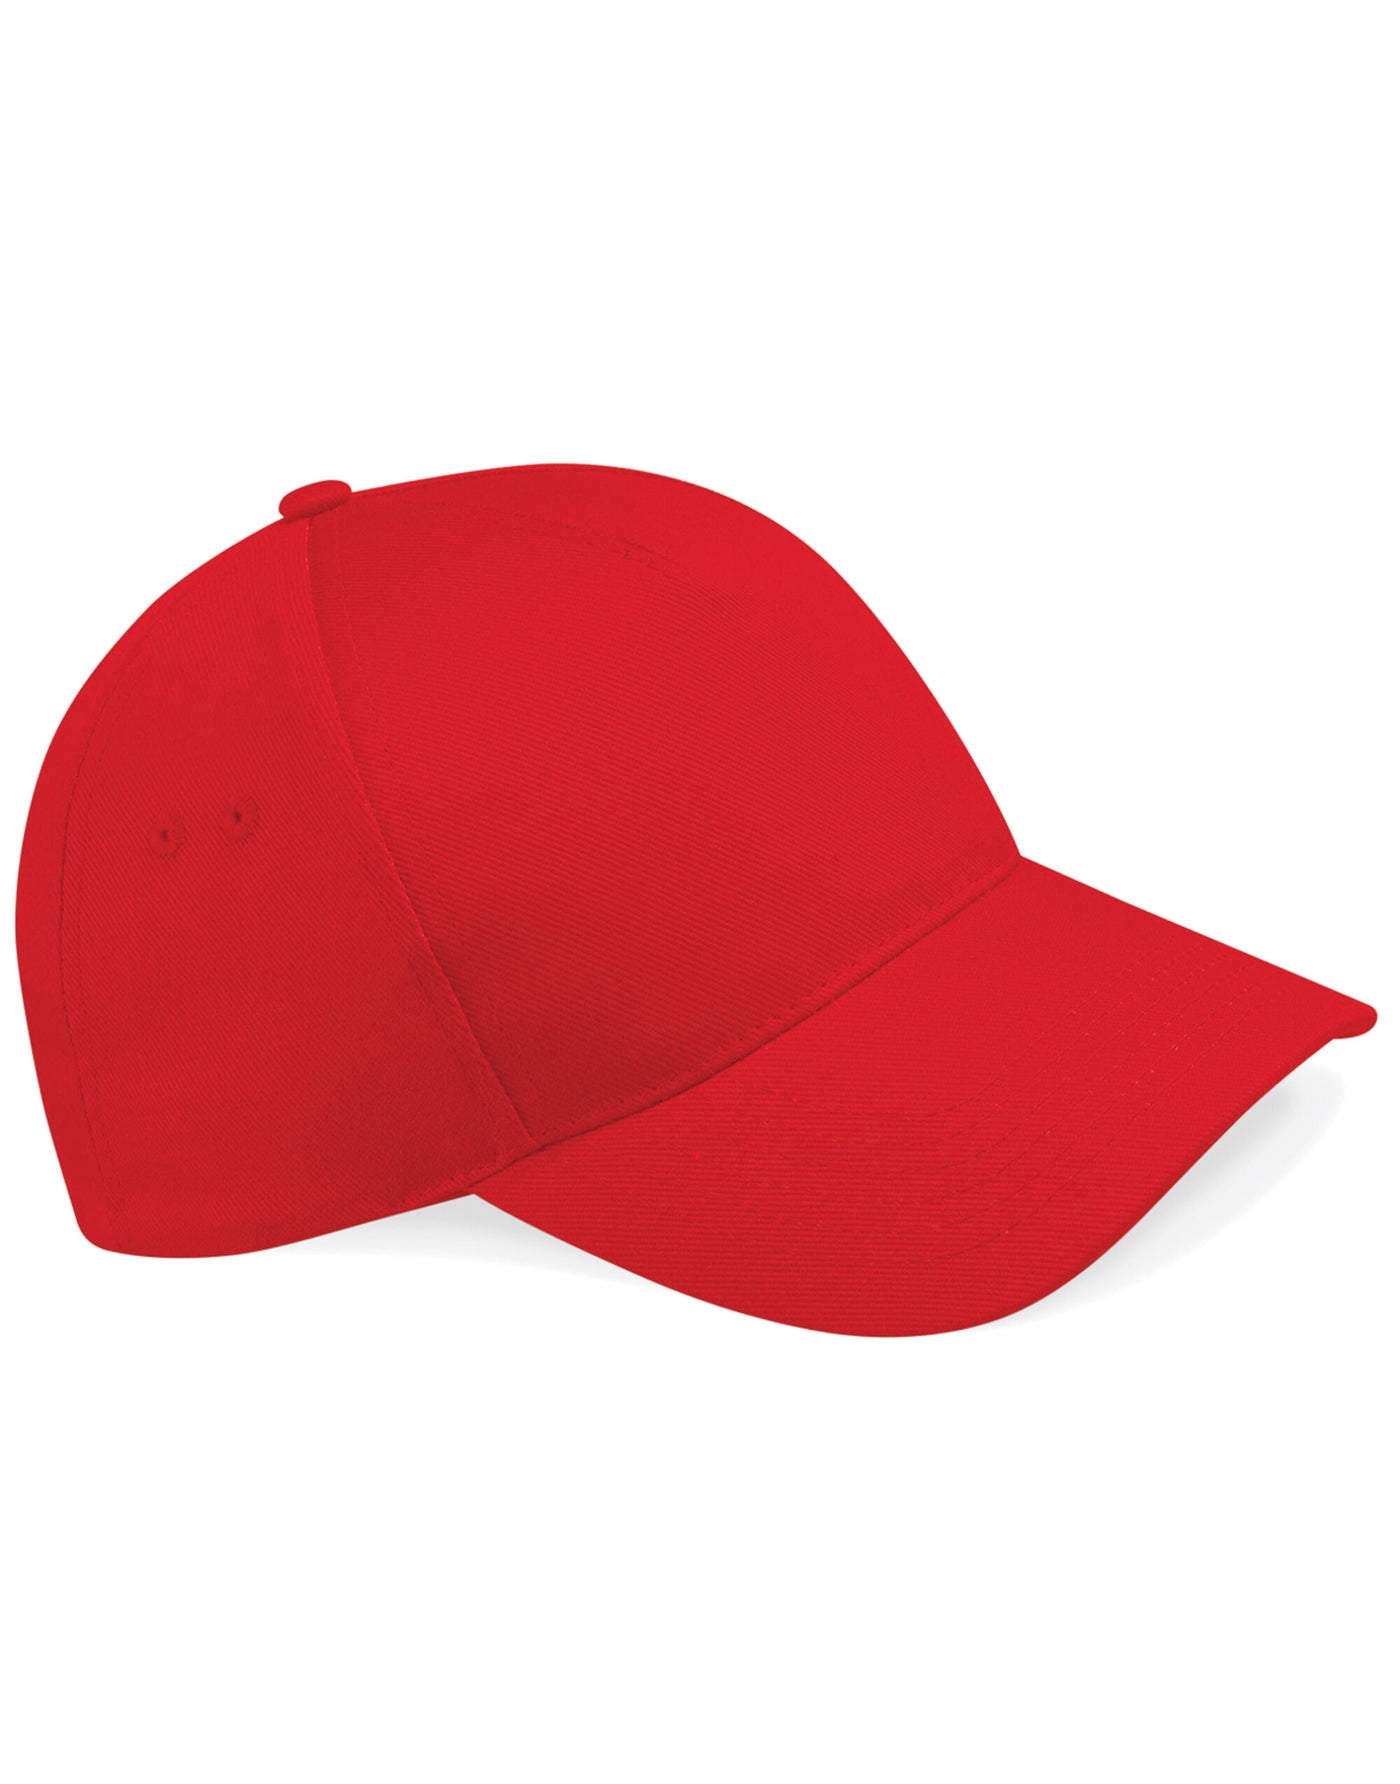 Classic Red Cap